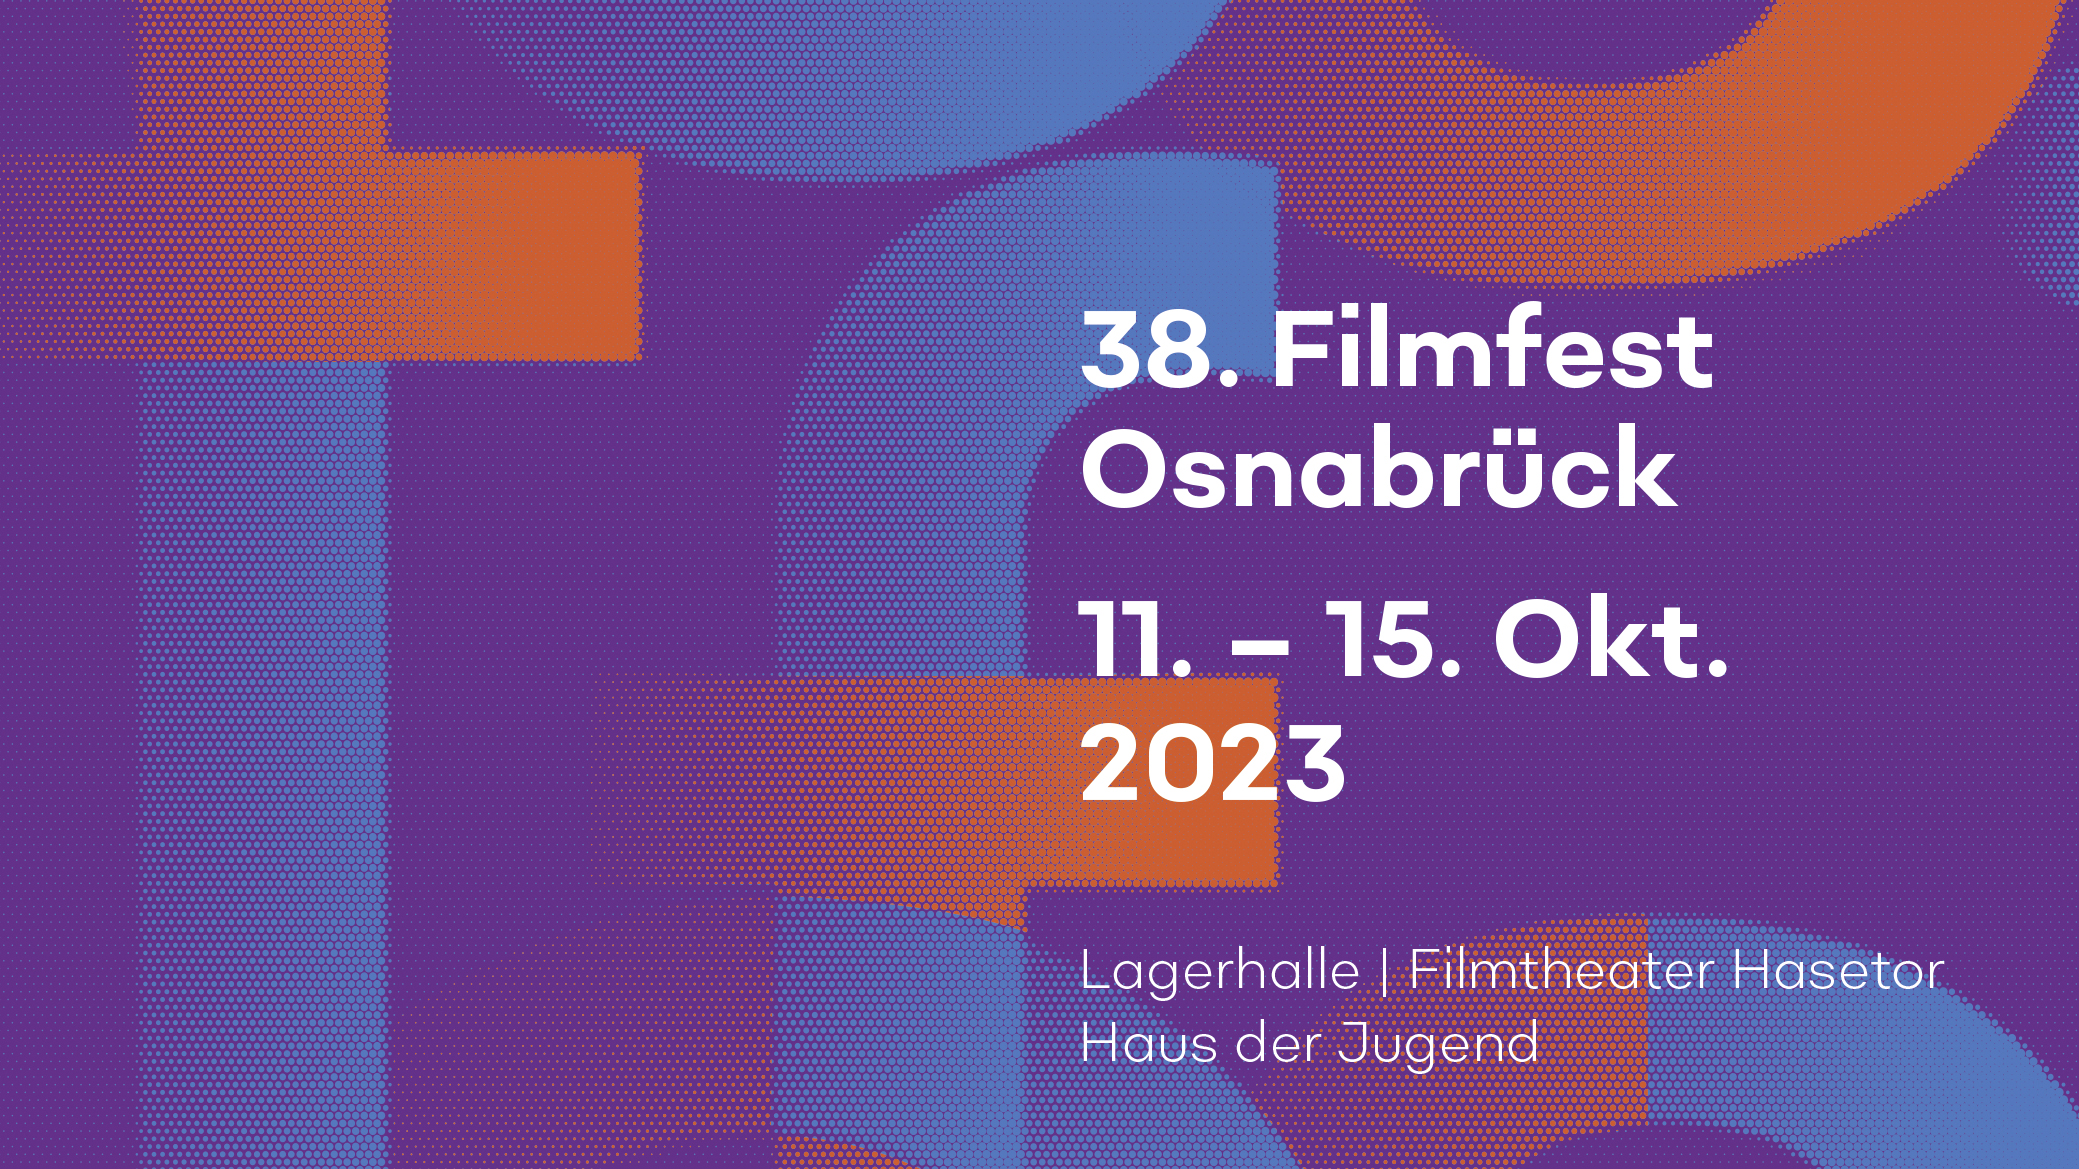 FilmfestOsnabrück